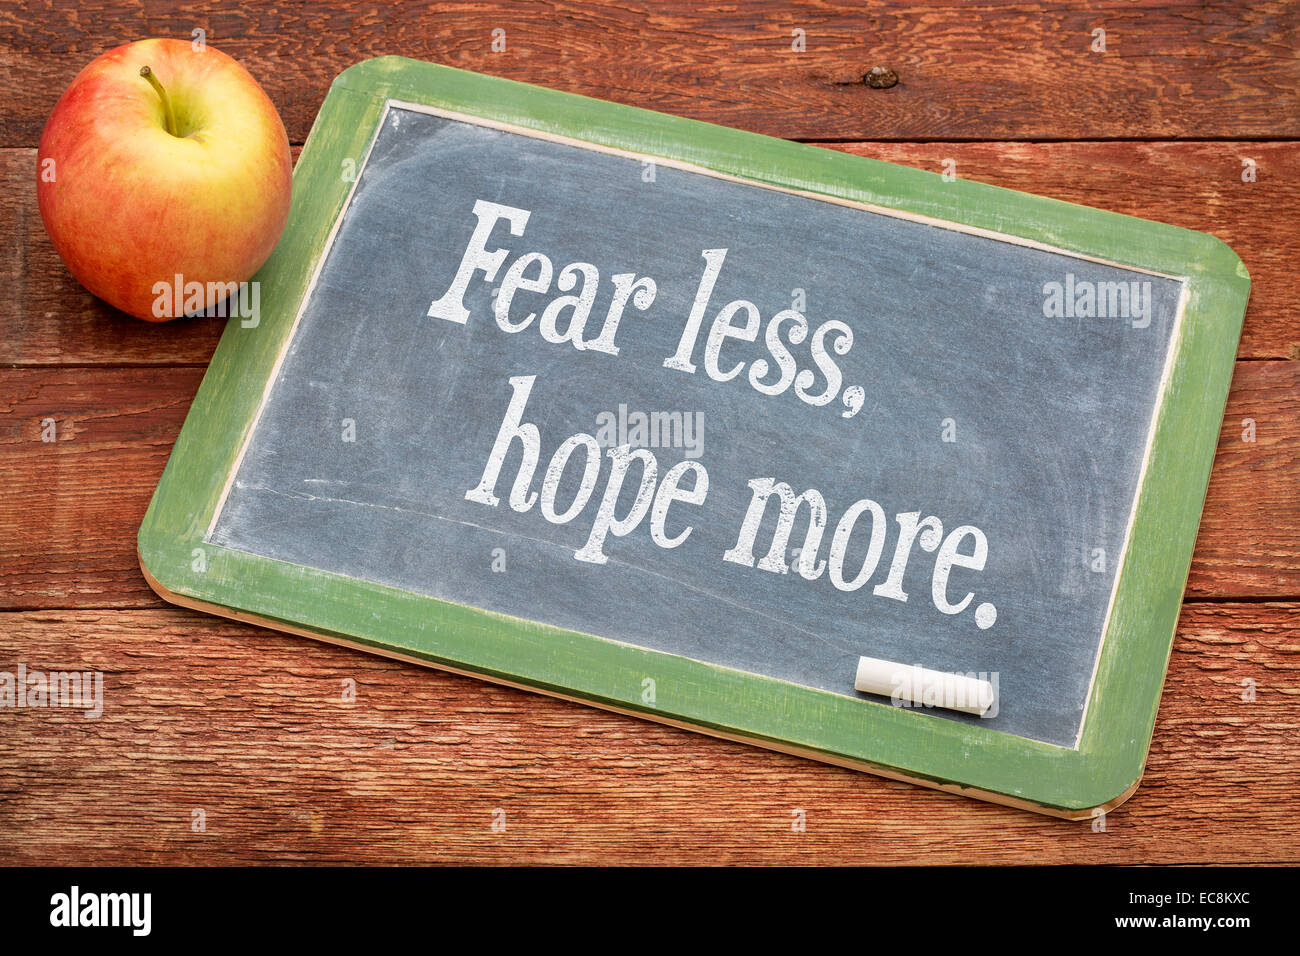 Angst vor weniger, hoffe mehr - Worte der Weisheit auf einer Schiefertafel Tafel gegen rote Scheune Holz Stockfoto